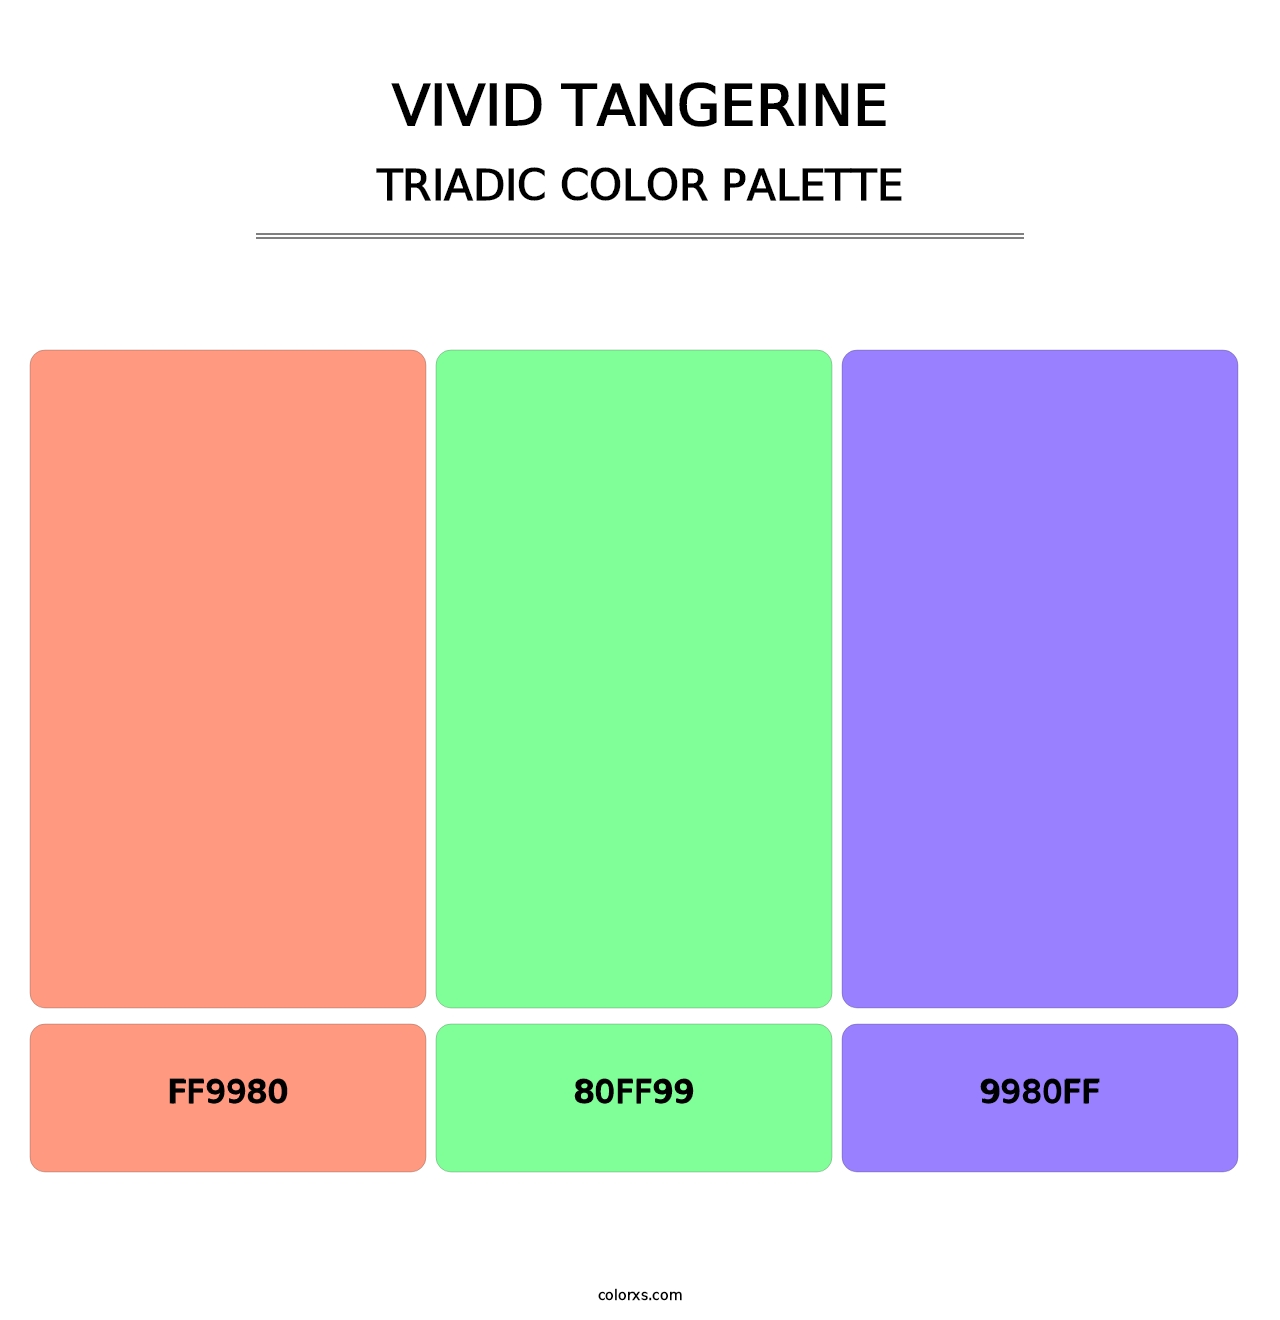 Vivid Tangerine - Triadic Color Palette